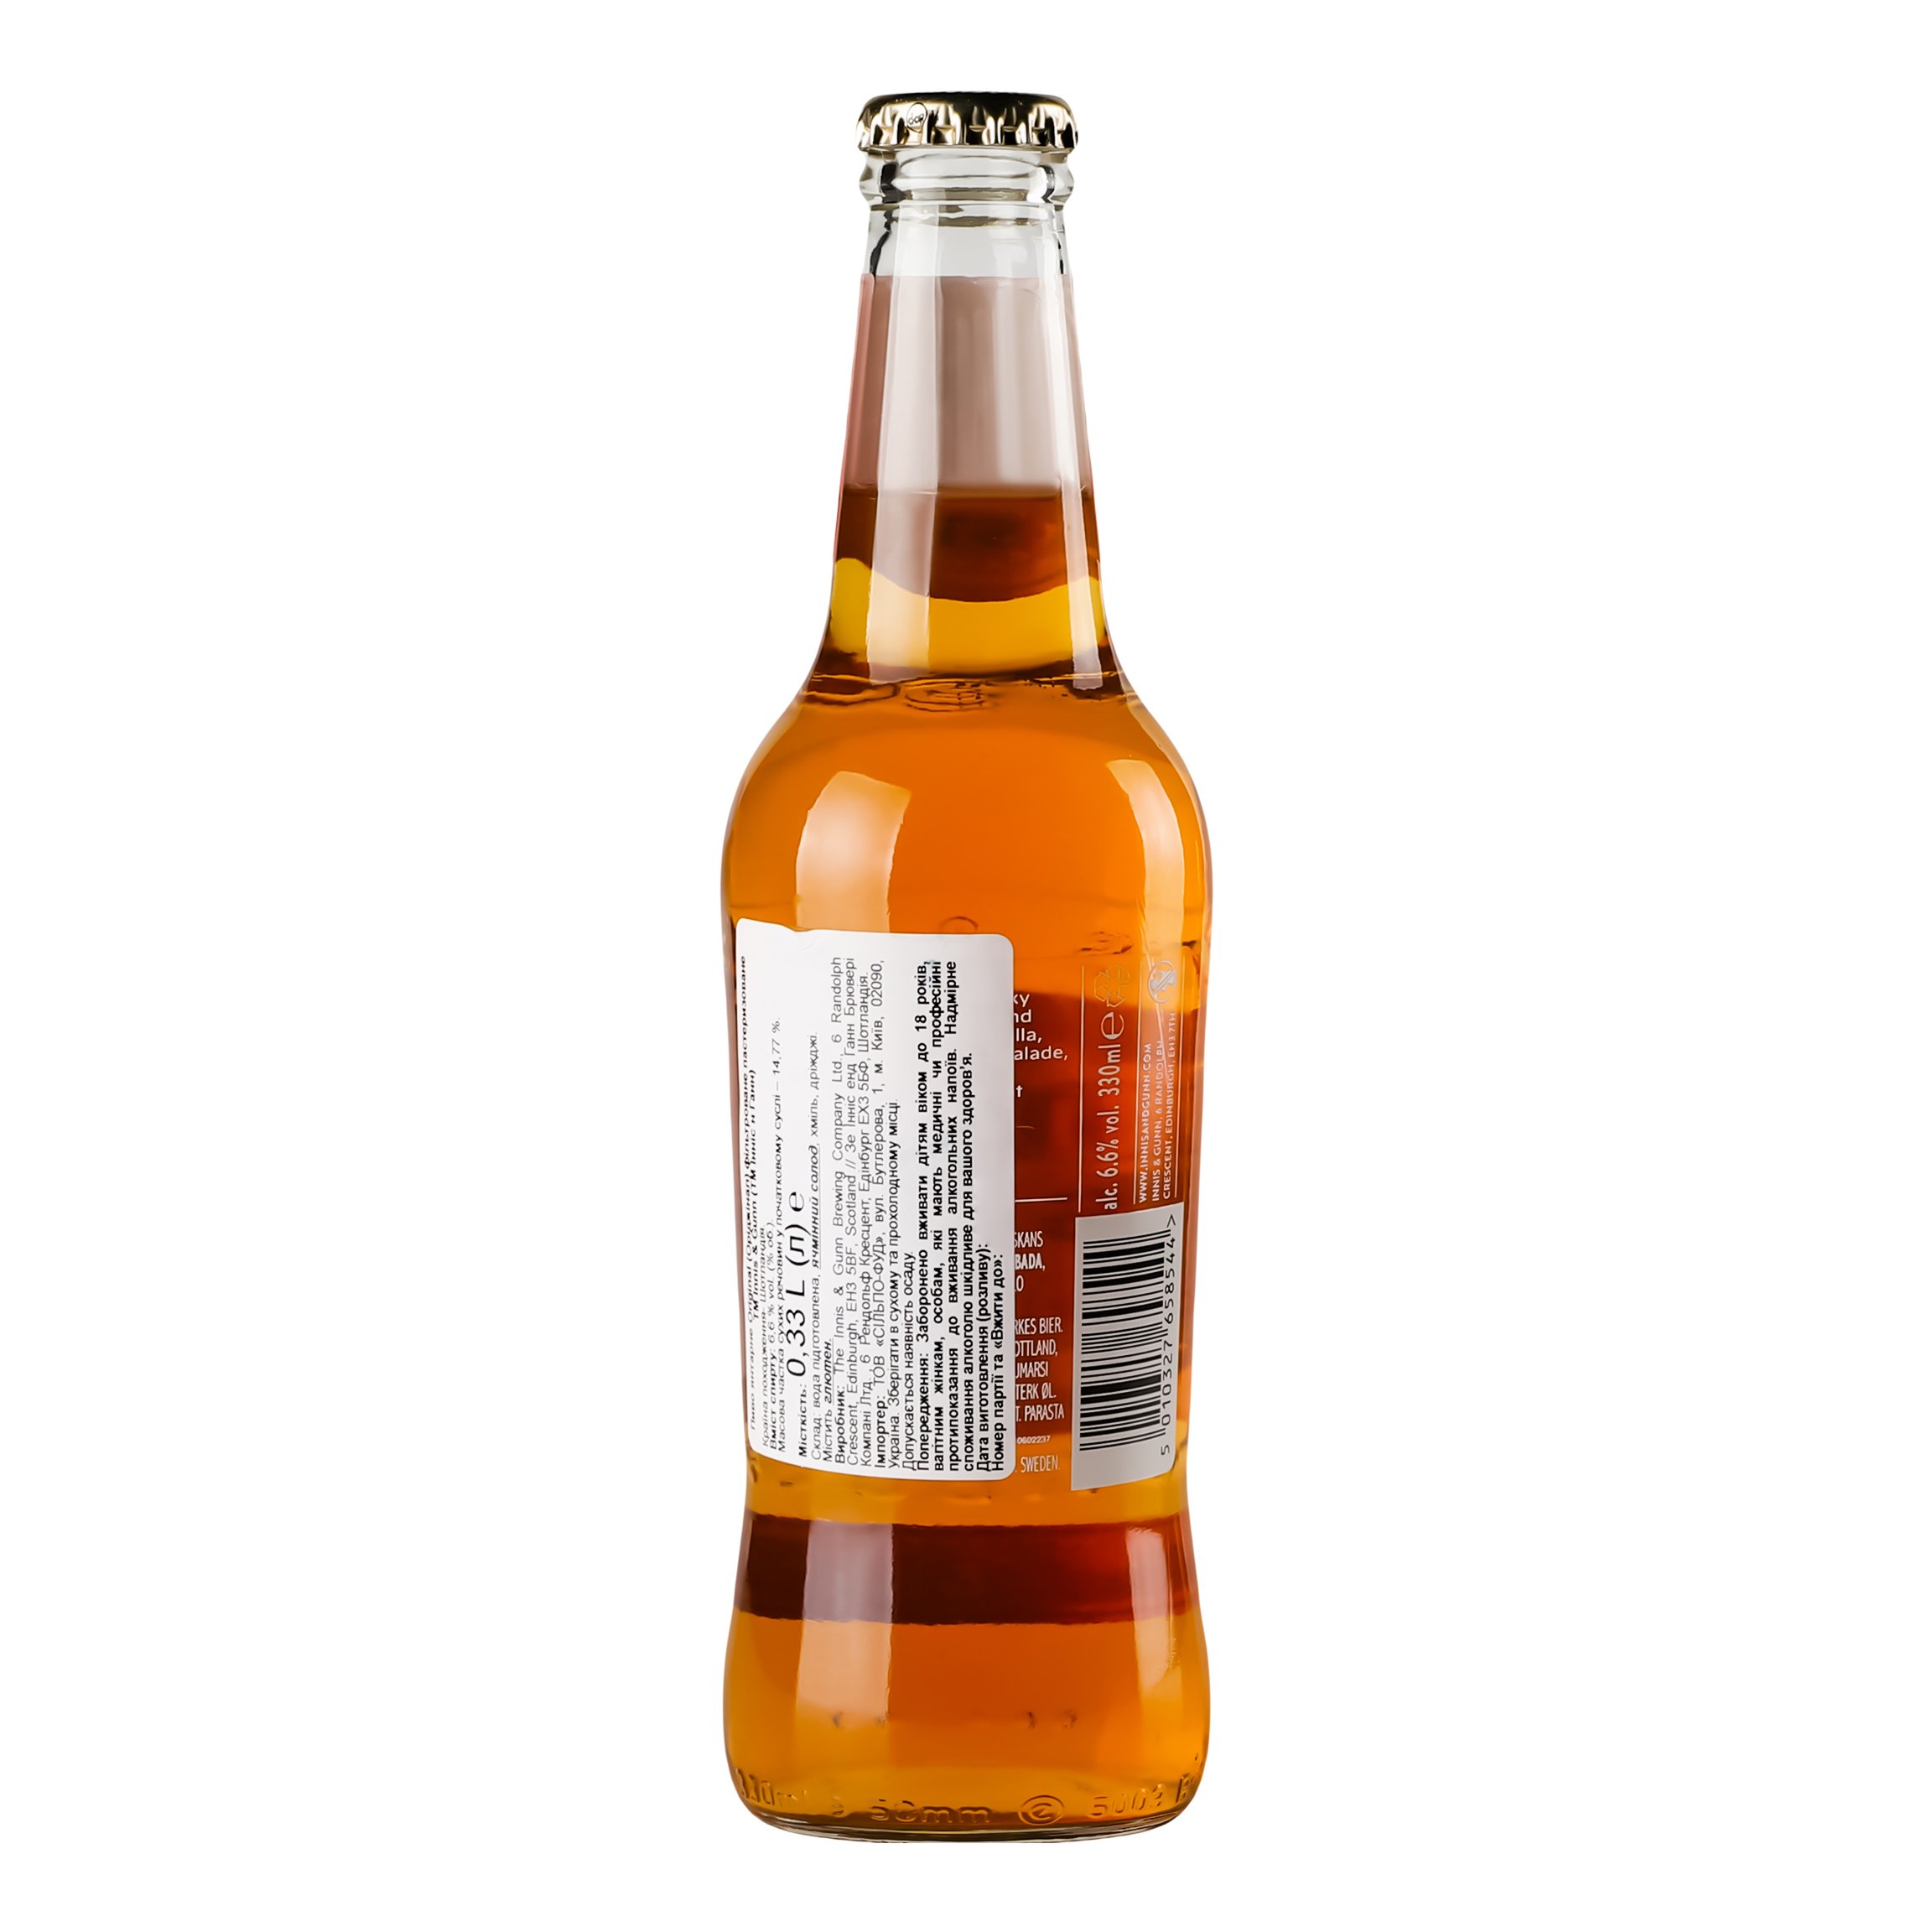 Пиво Innis&Gunn Original янтарное фильтрованное, 6,6%, 0,33 л (577454) - фото 4